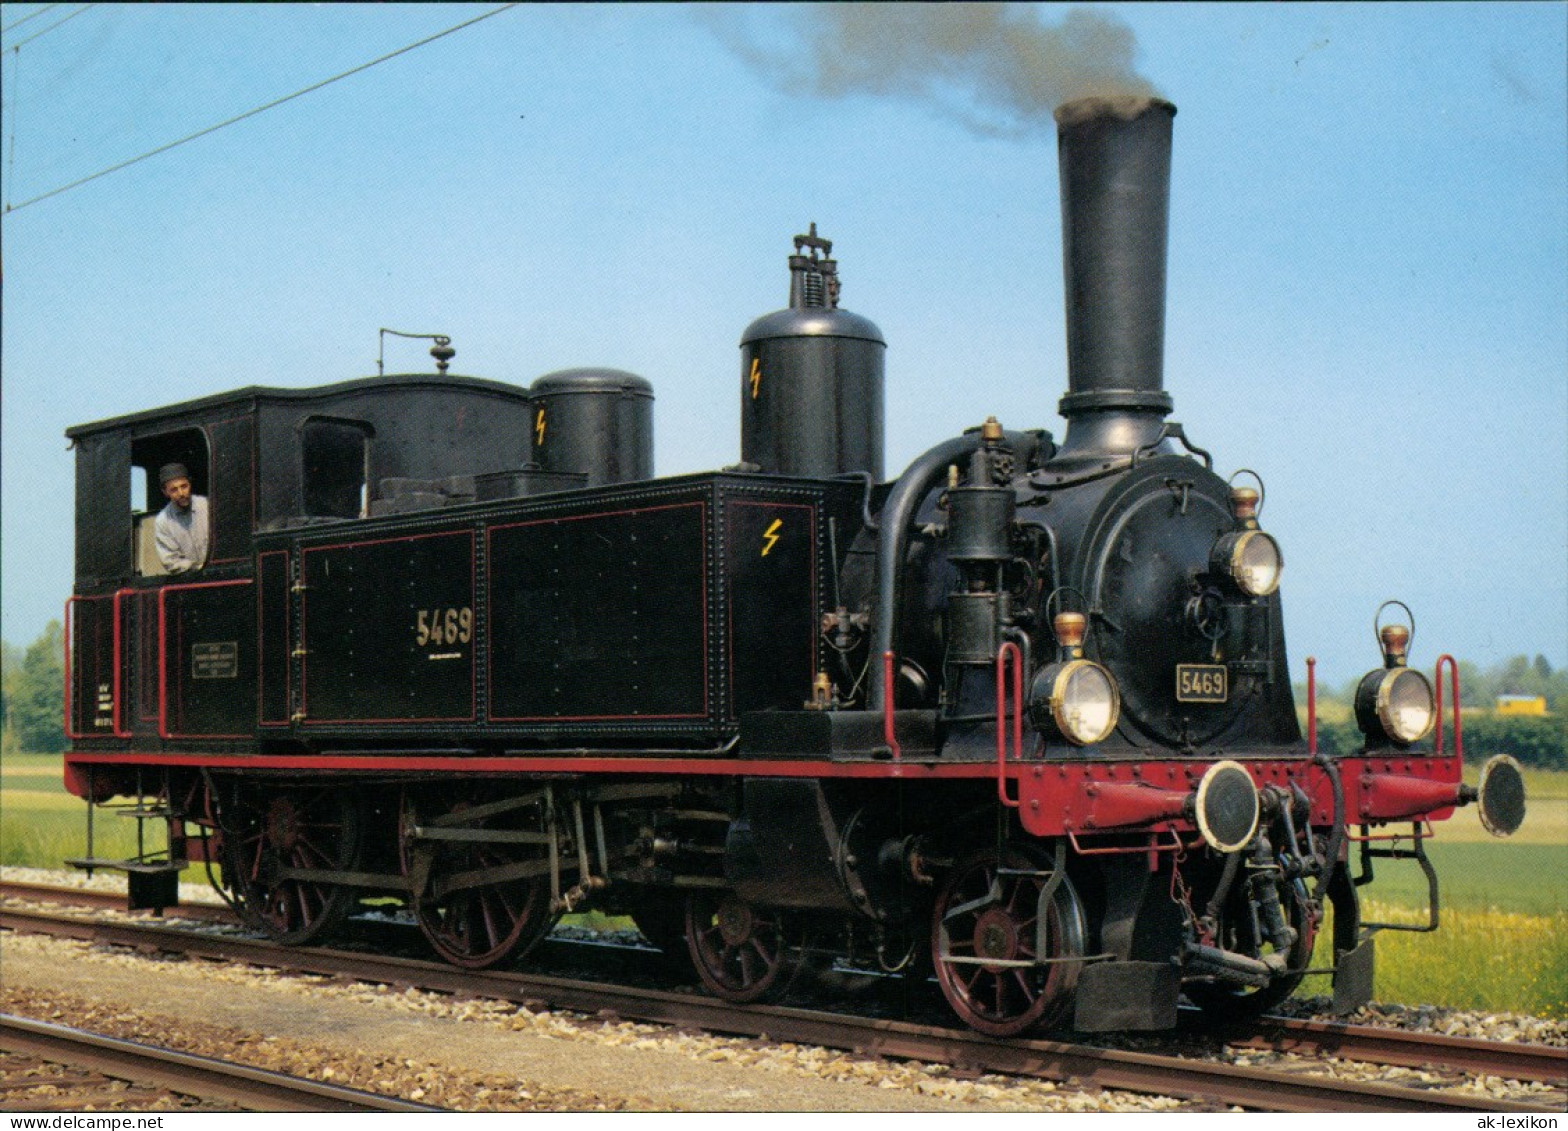 Verkehr & Eisenbahn (Railway) Dampflokomotive Eb 2/4 5469 Rail Boutique 1980 - Eisenbahnen